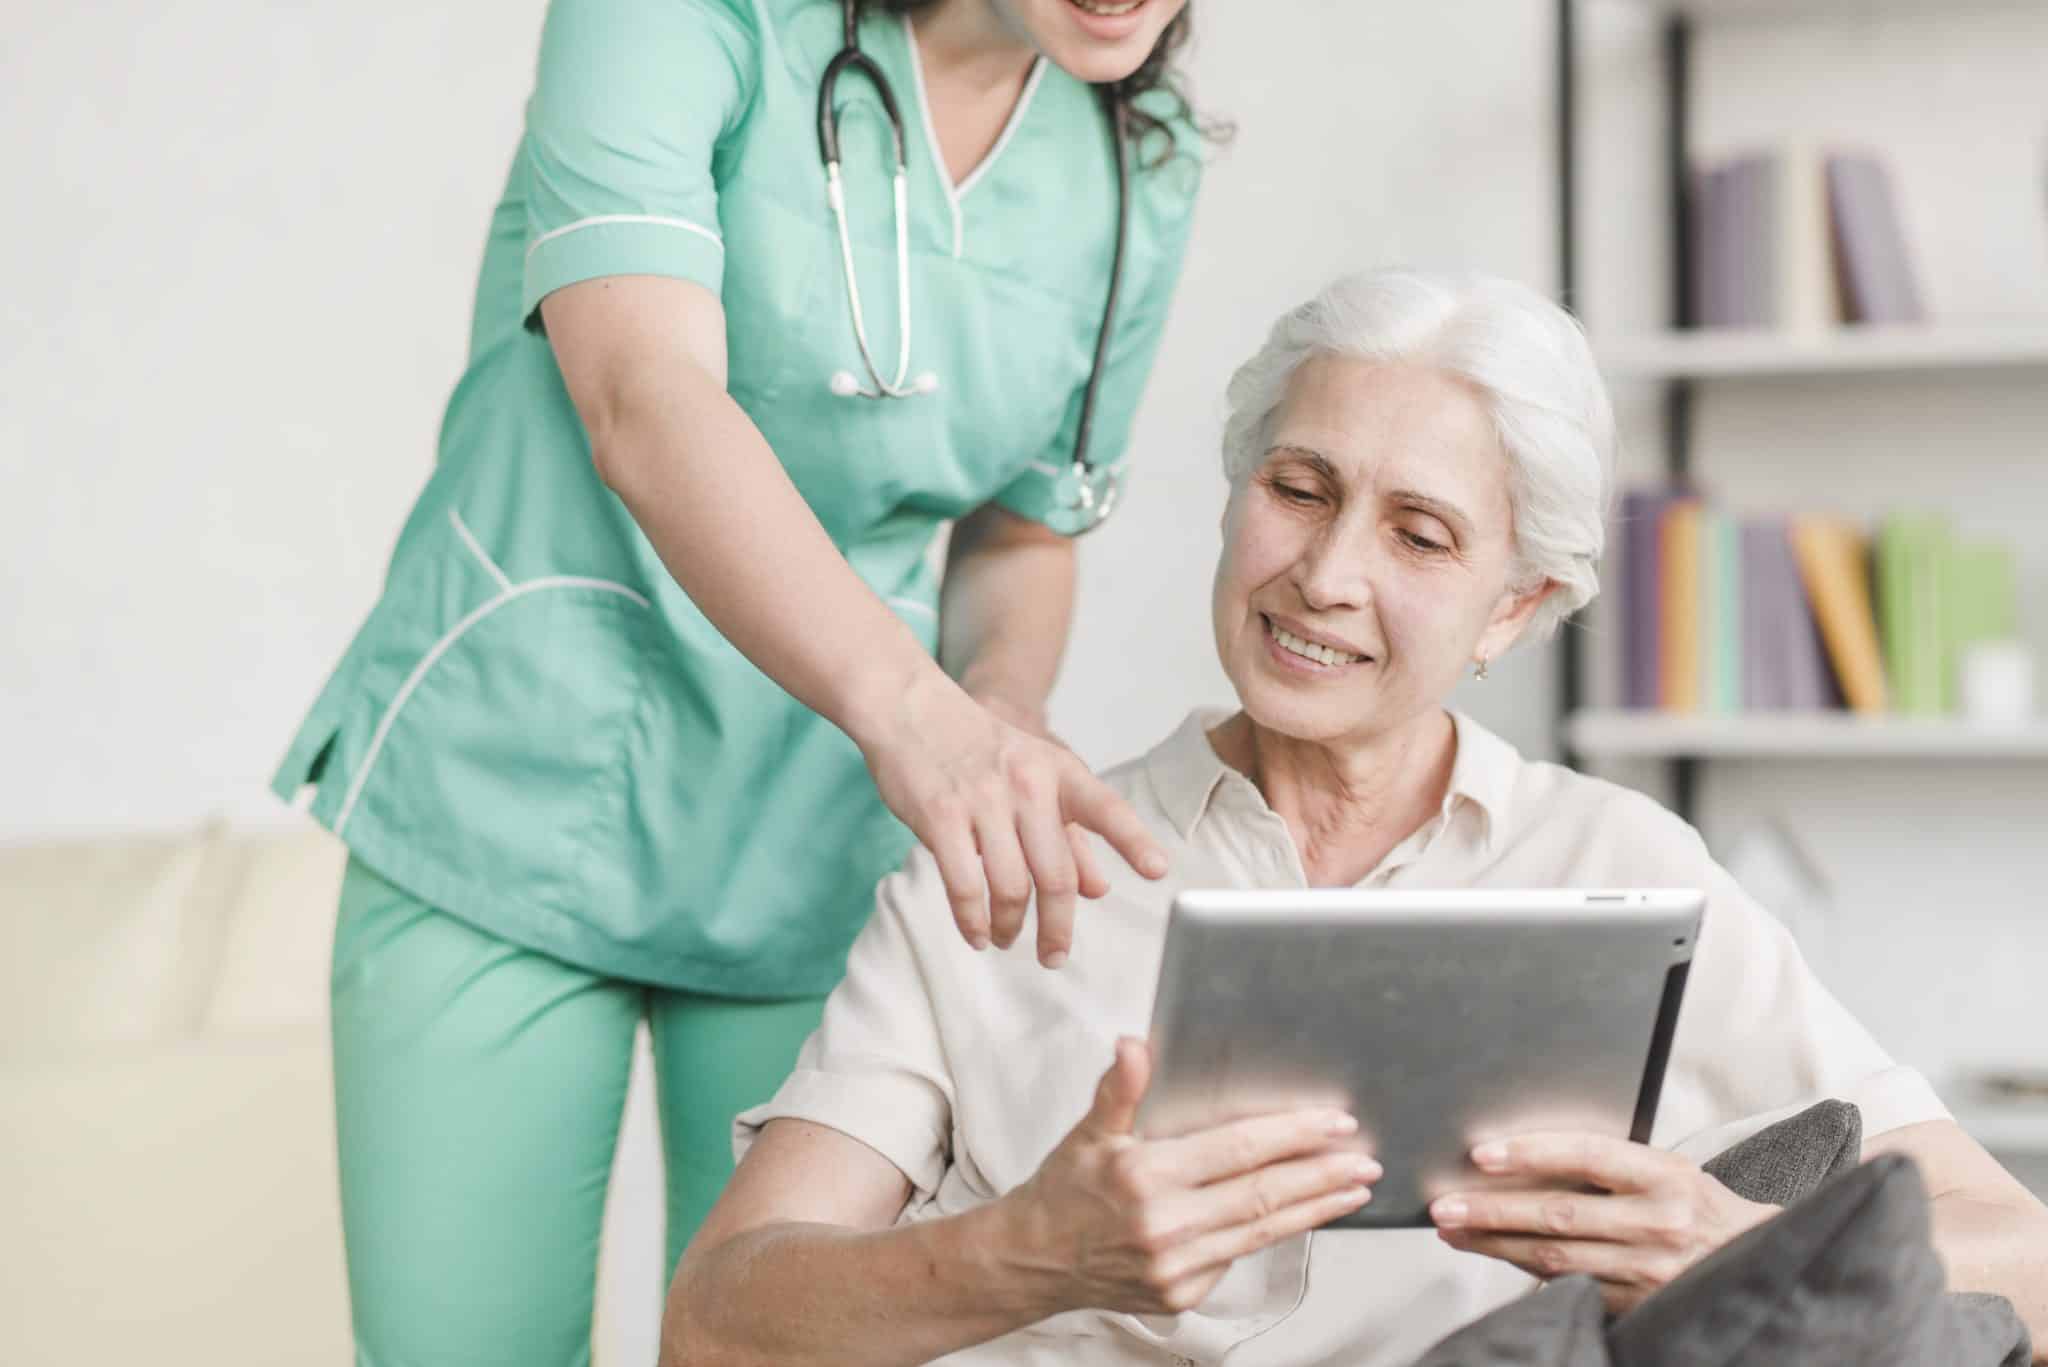 infirmiere-montrant-quelque-chose-patiente-senior-tablette-numerique